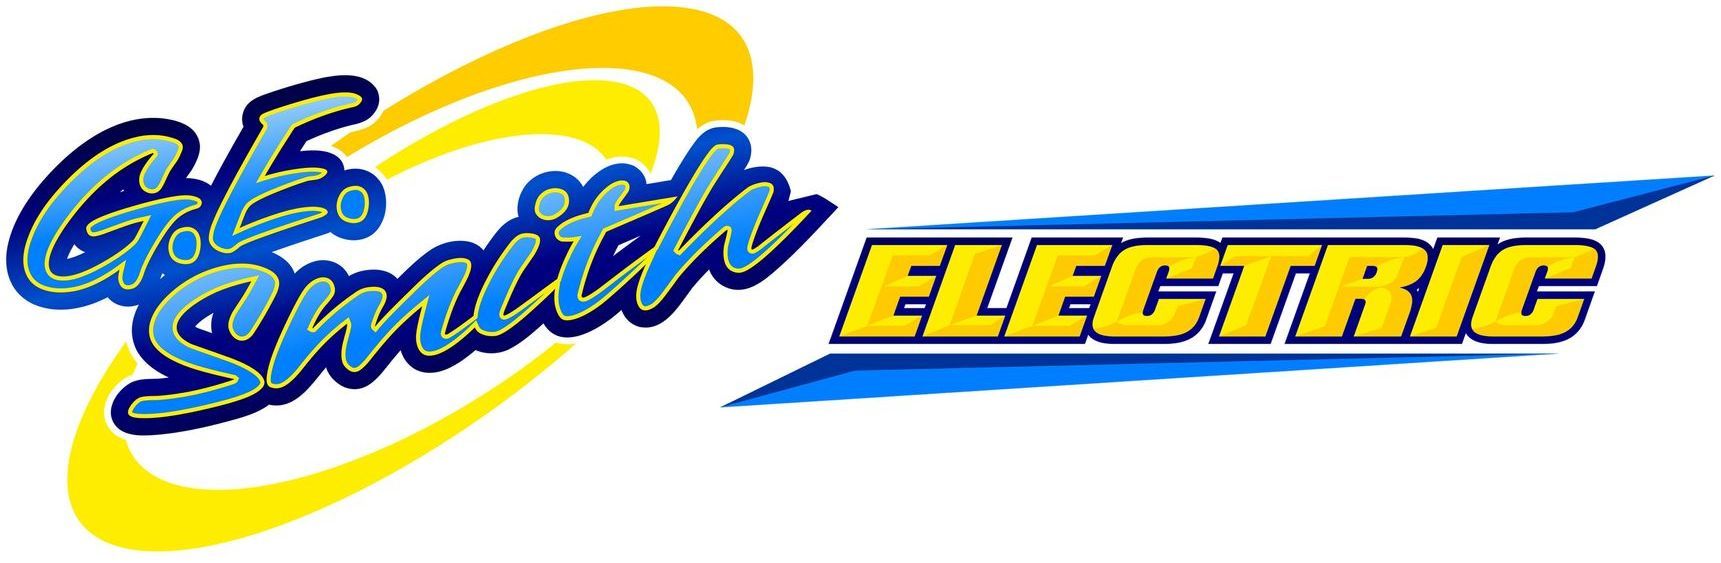 G.E. Smith Electric, Inc. - logo